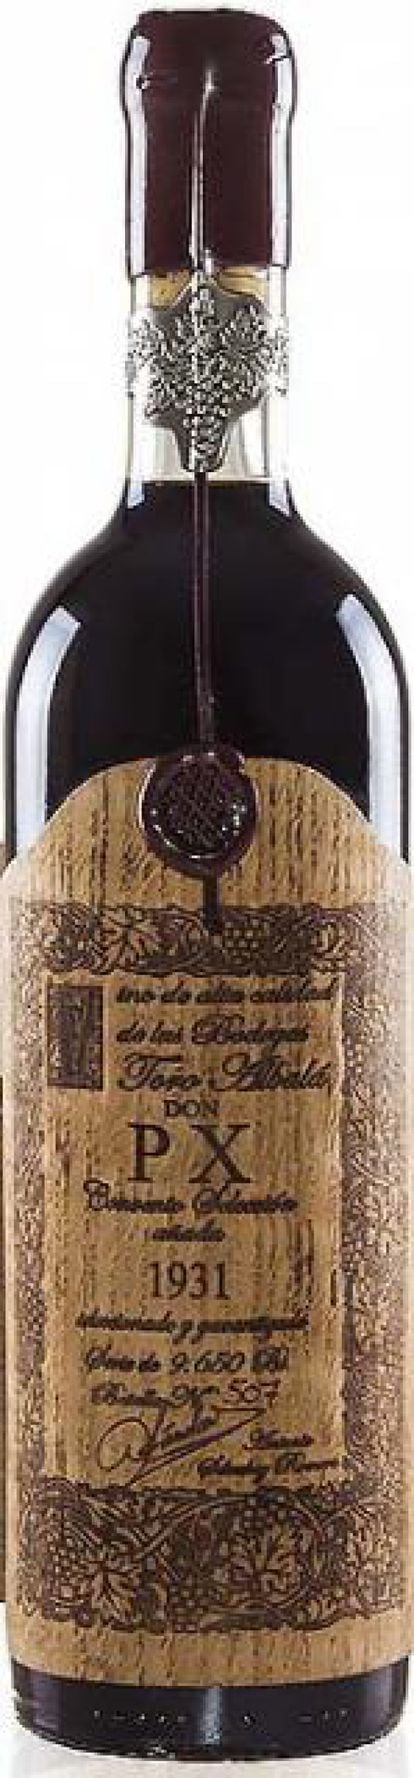 La gama de Toro Albalá reúne vinos viejos criados en barriles de amontillado. Elaborado con uvas pedro ximénez, el embotellado sigue el sistema de los monjes cistercienses con series propias. Precio: 250 euros